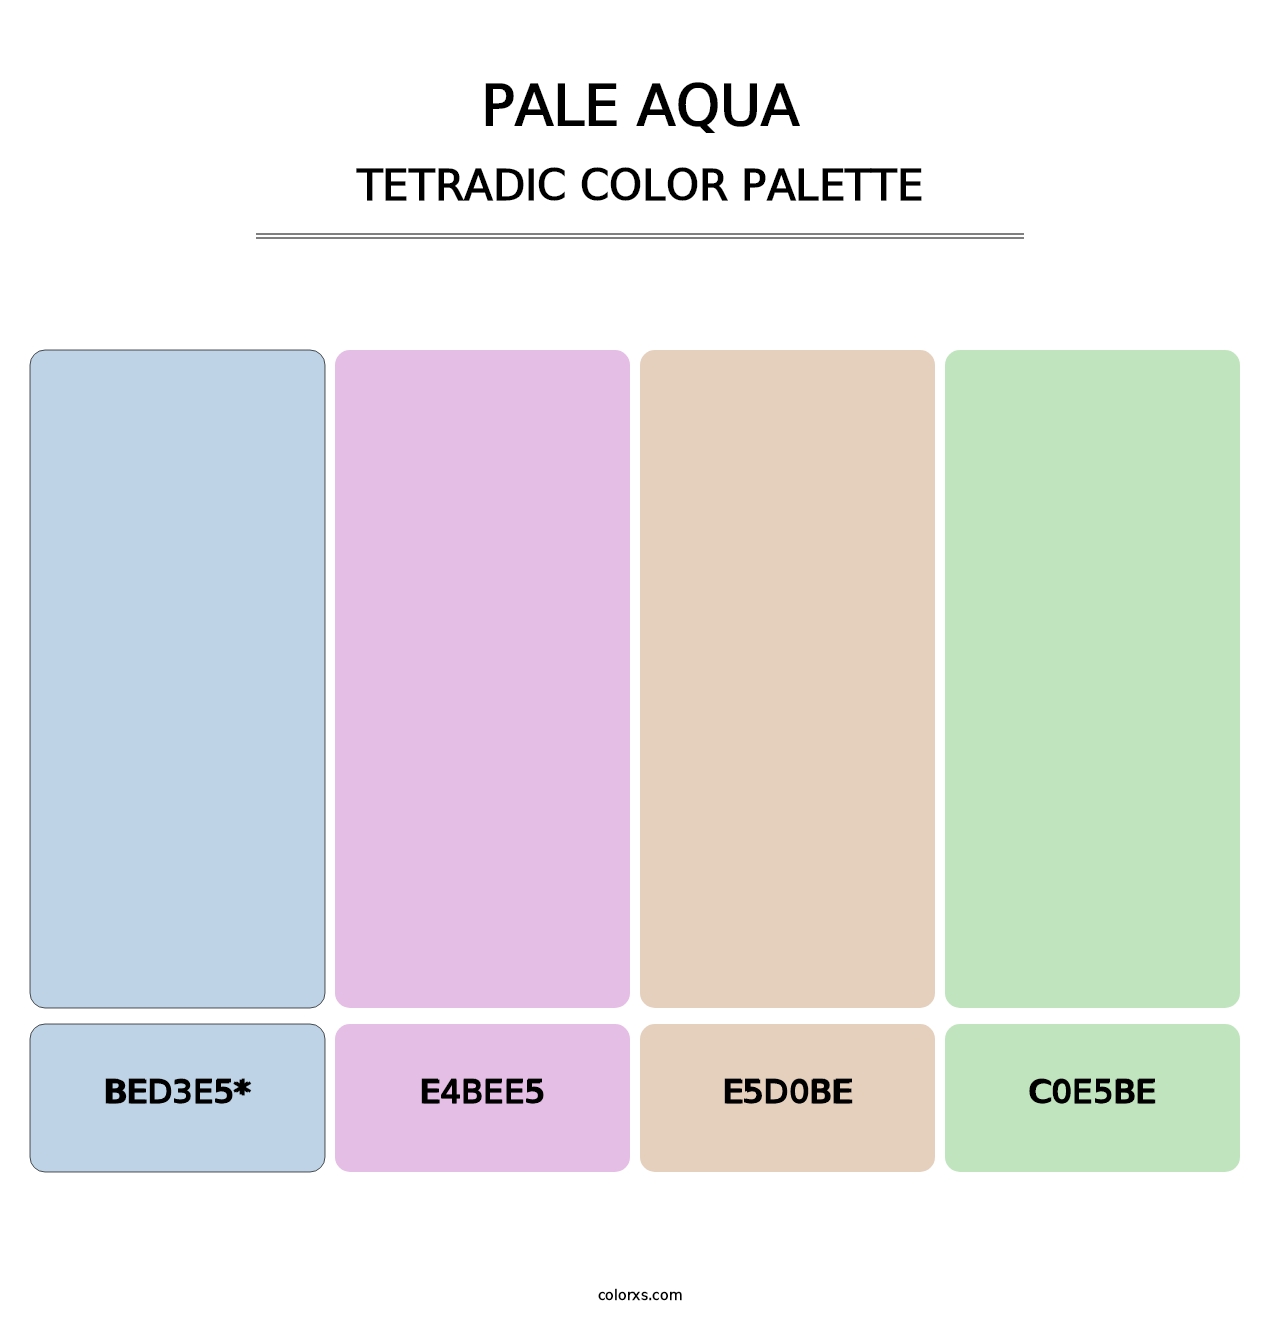 Pale Aqua - Tetradic Color Palette